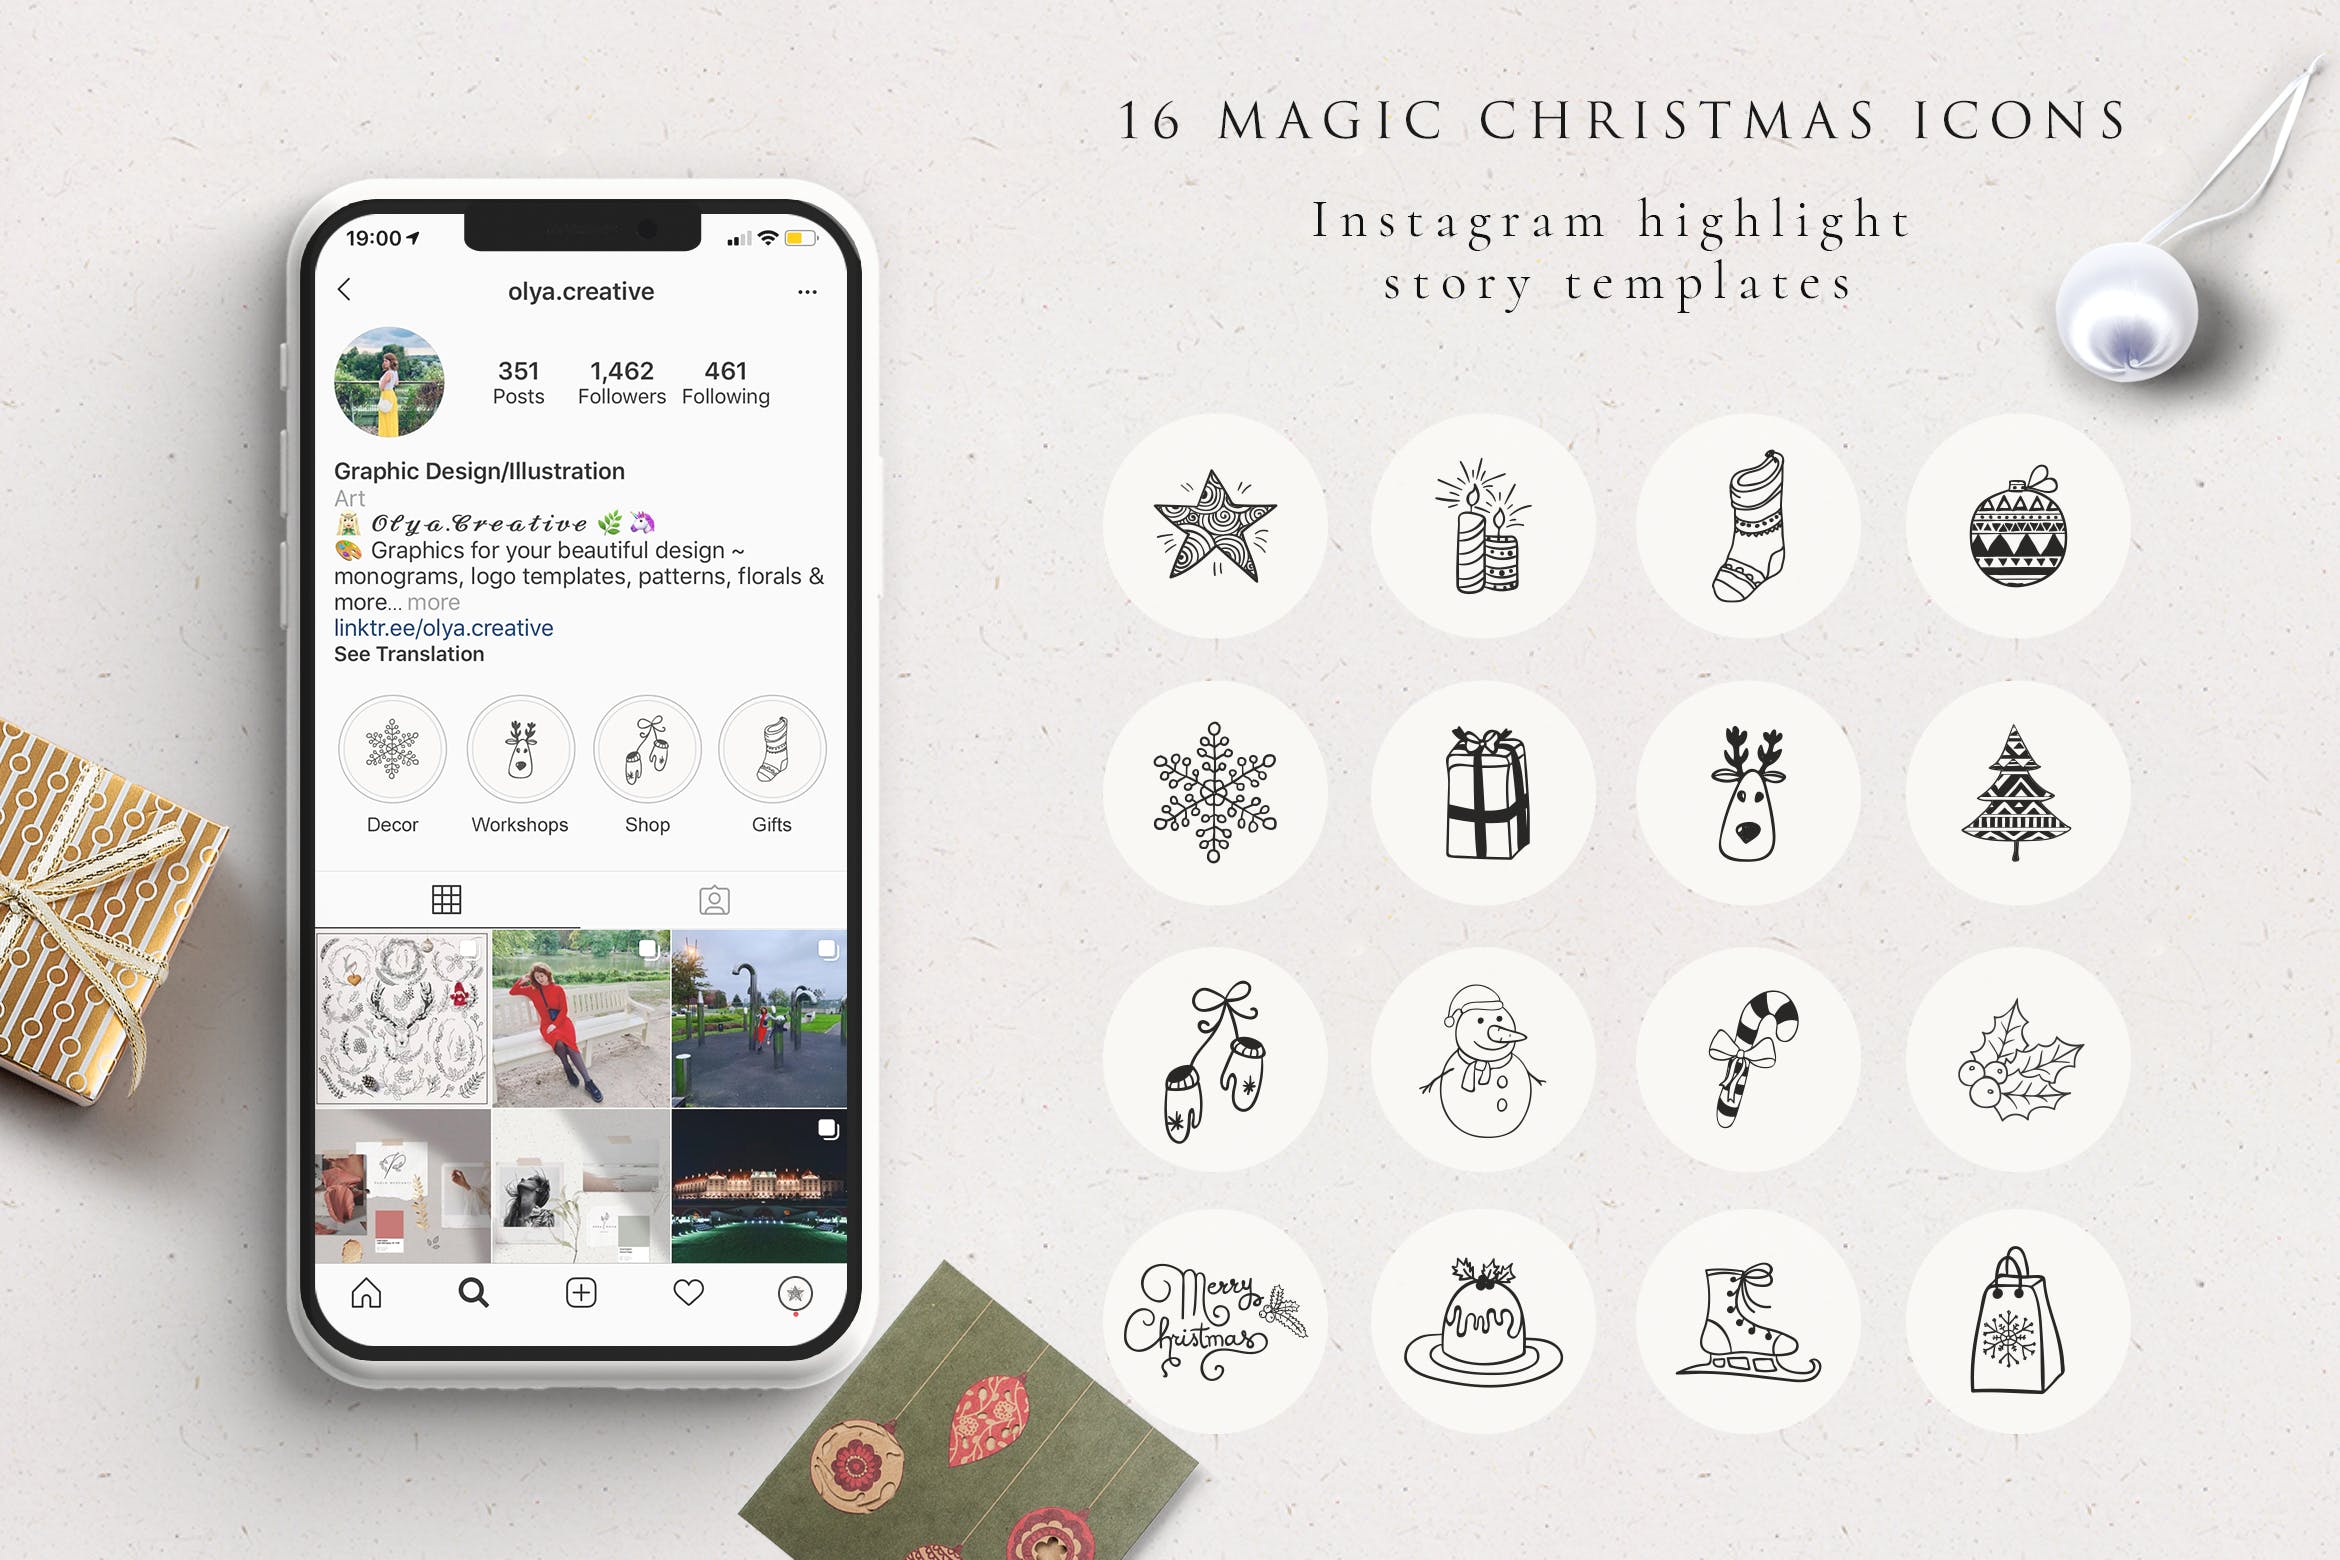 圣诞节主题Highlight矢量图标素材 Xmas Instagram Highlight Story Icons插图